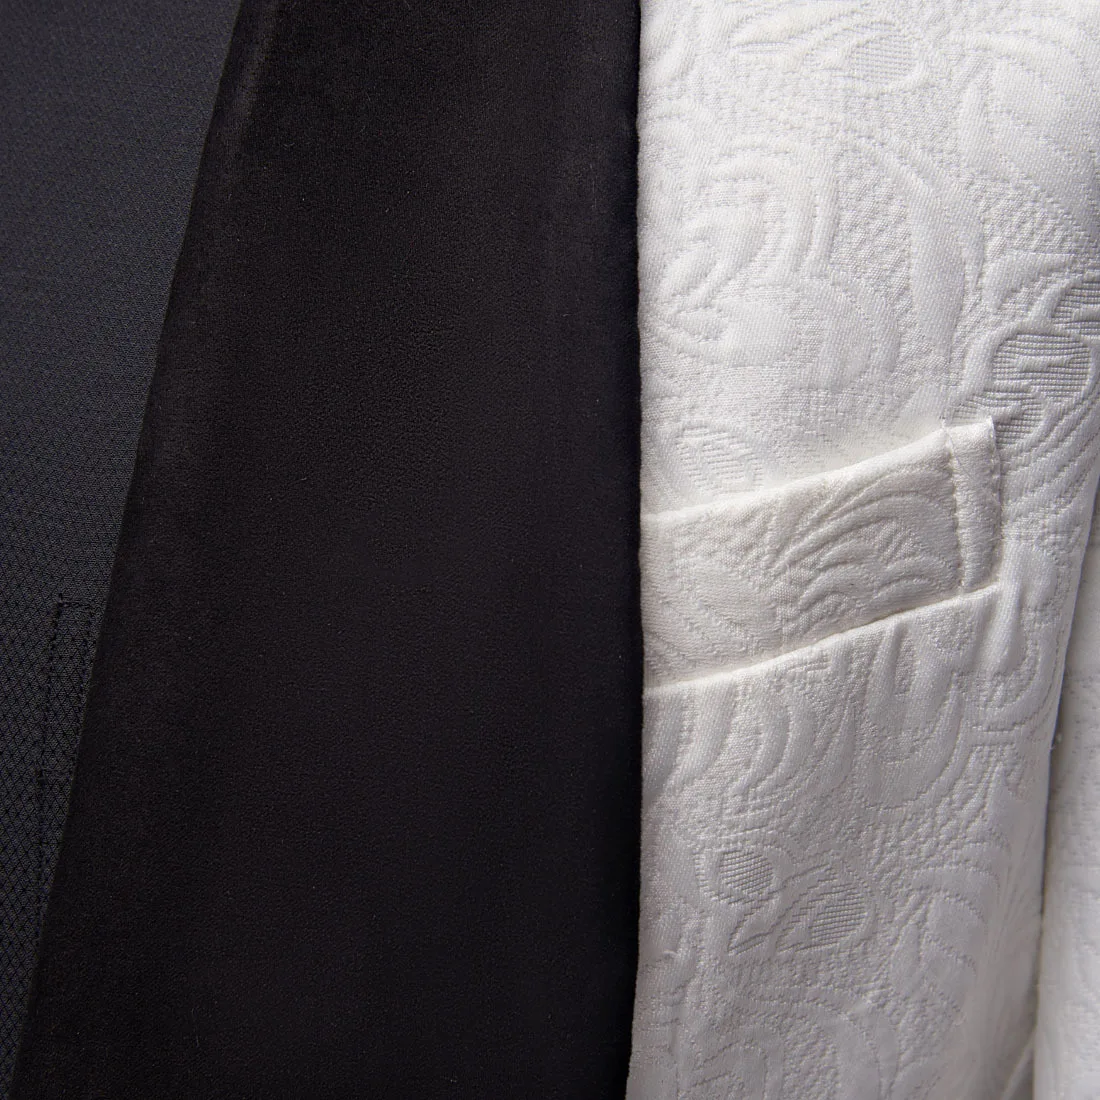 PYJTRL Мужская мода большой платок нагрудные 3 шт. комплект розовый красный синий белый черный свадебные костюмы жениха качество жаккард банкет смокинг